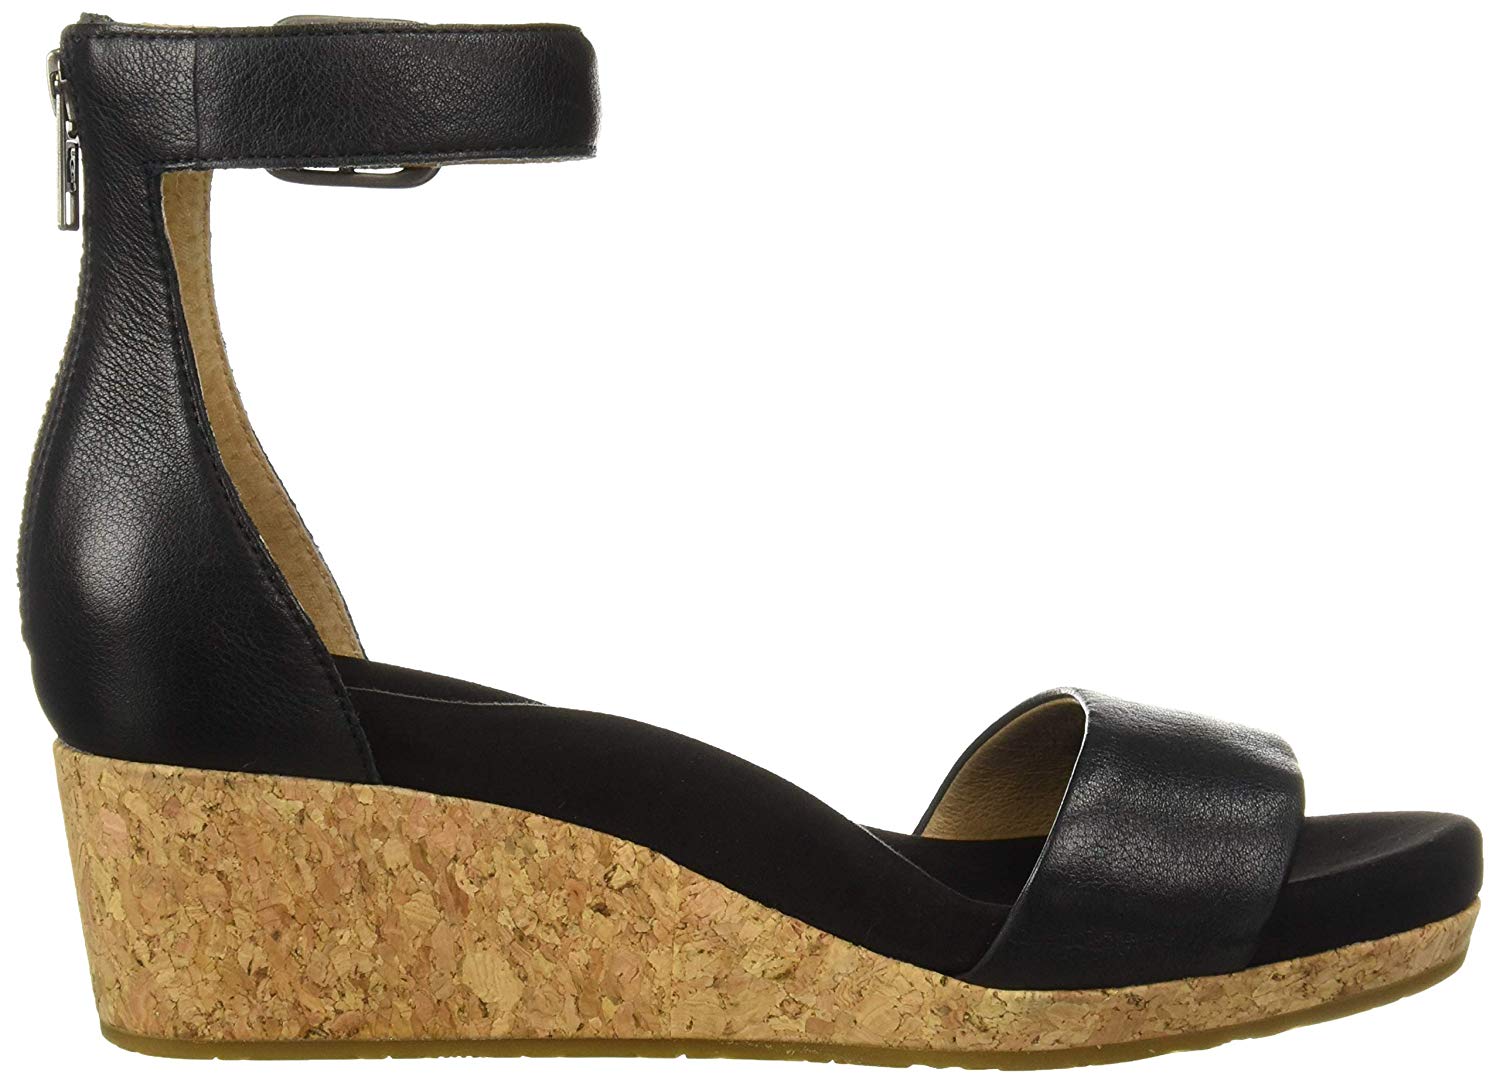 Ugg Australia Womens Platform Sandals in Black Color, Size 9 CYR | eBay